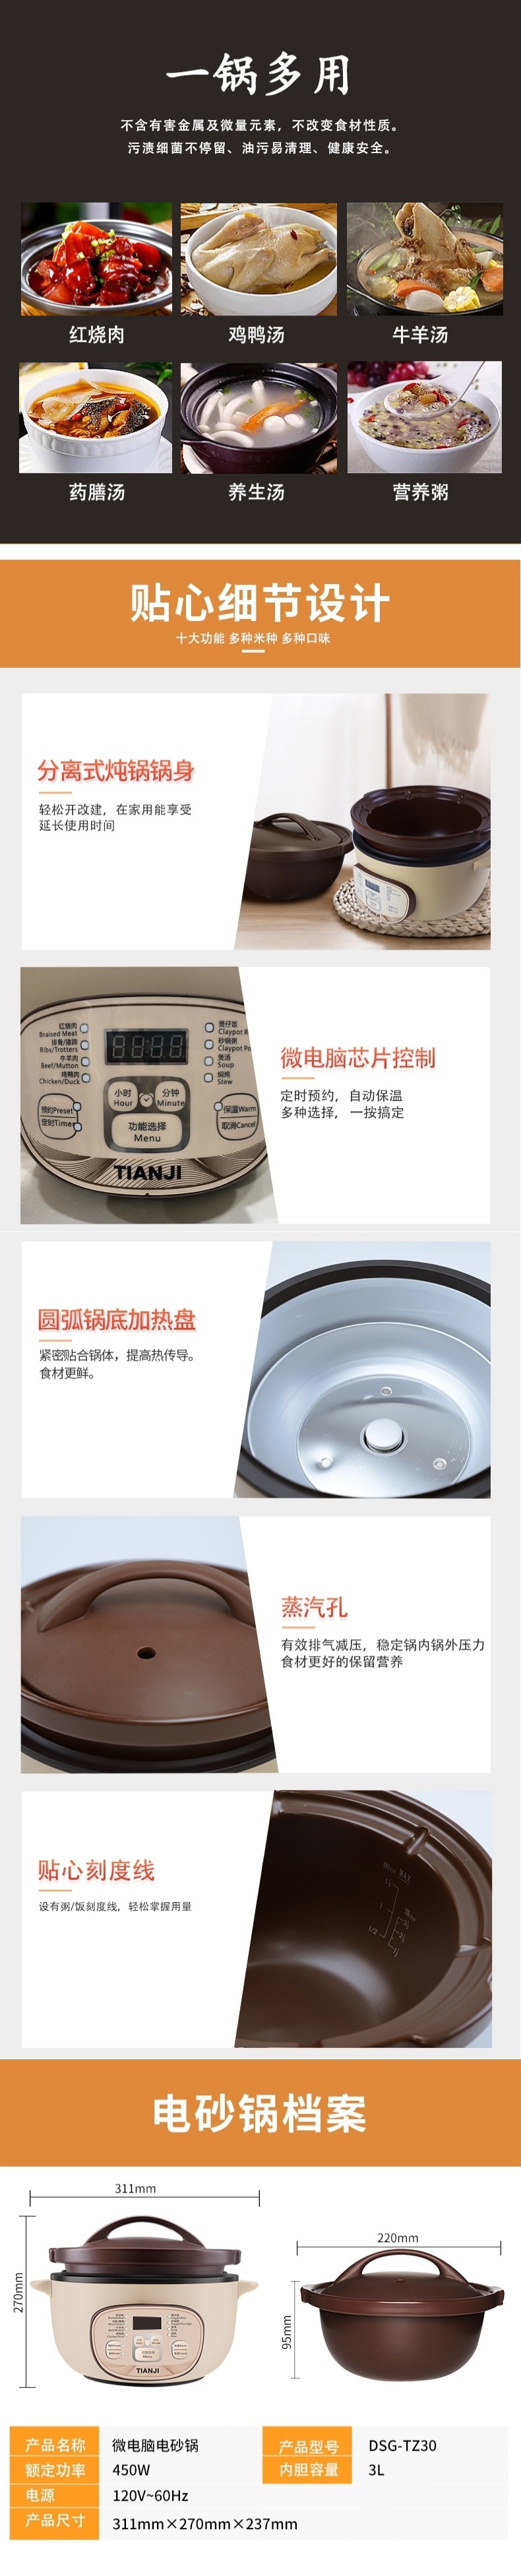 【美国本土发货】Tianji天际 全自动电砂锅 陶瓷内胆 智能预约 3L